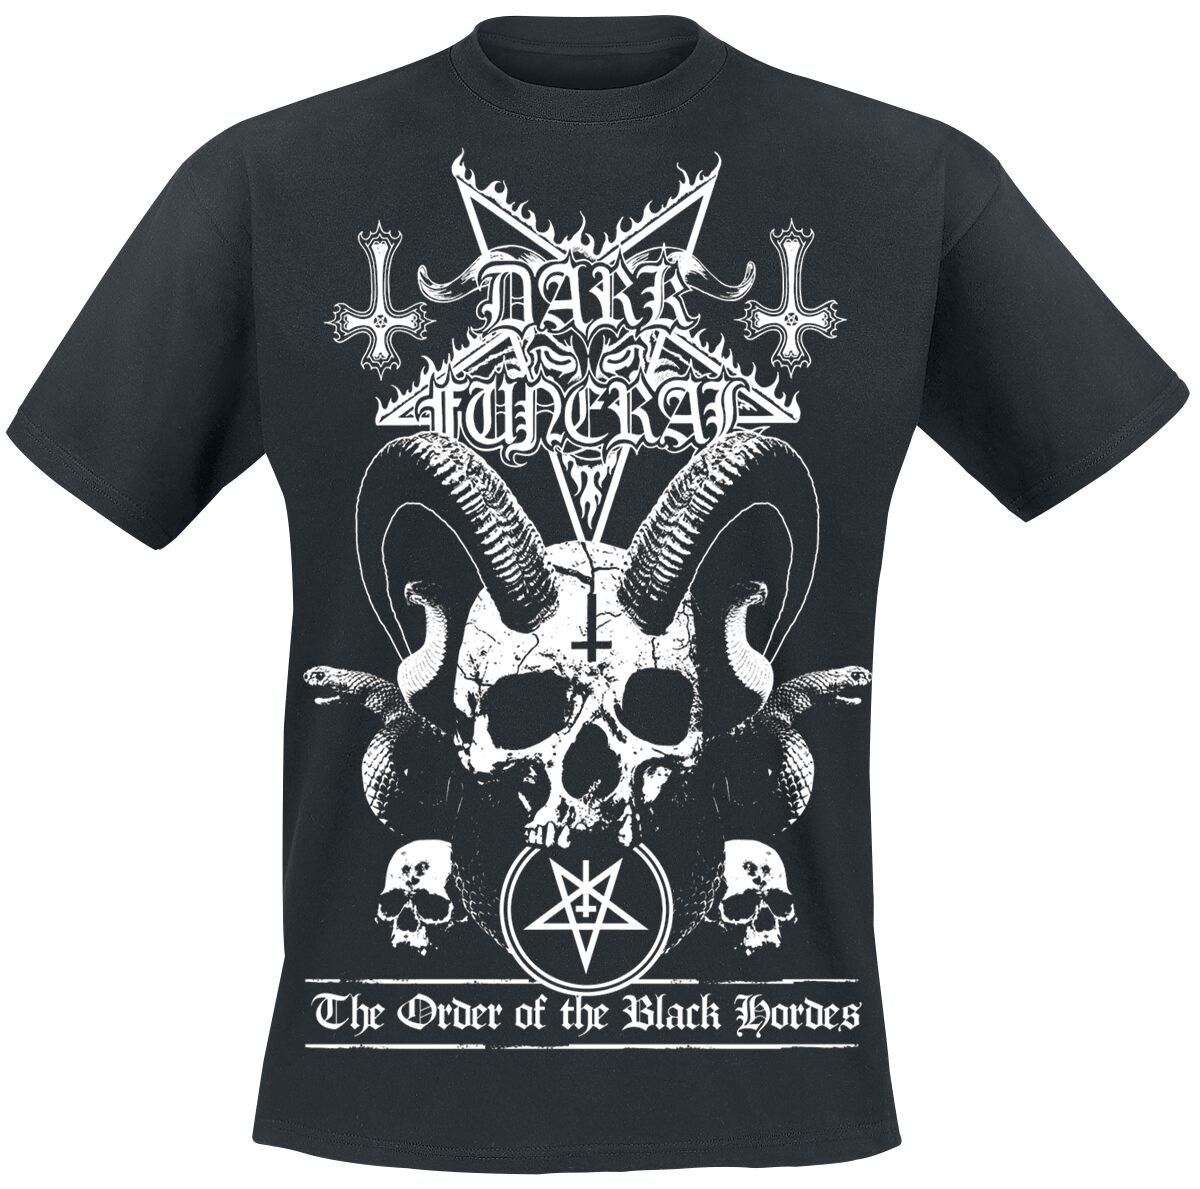 dark funeral t-shirt - order of the black hordes - m bis xxl - fÃ¼r mÃ¤nner - grÃ¶ÃŸe xxl - - lizenziertes merchandise! schwarz